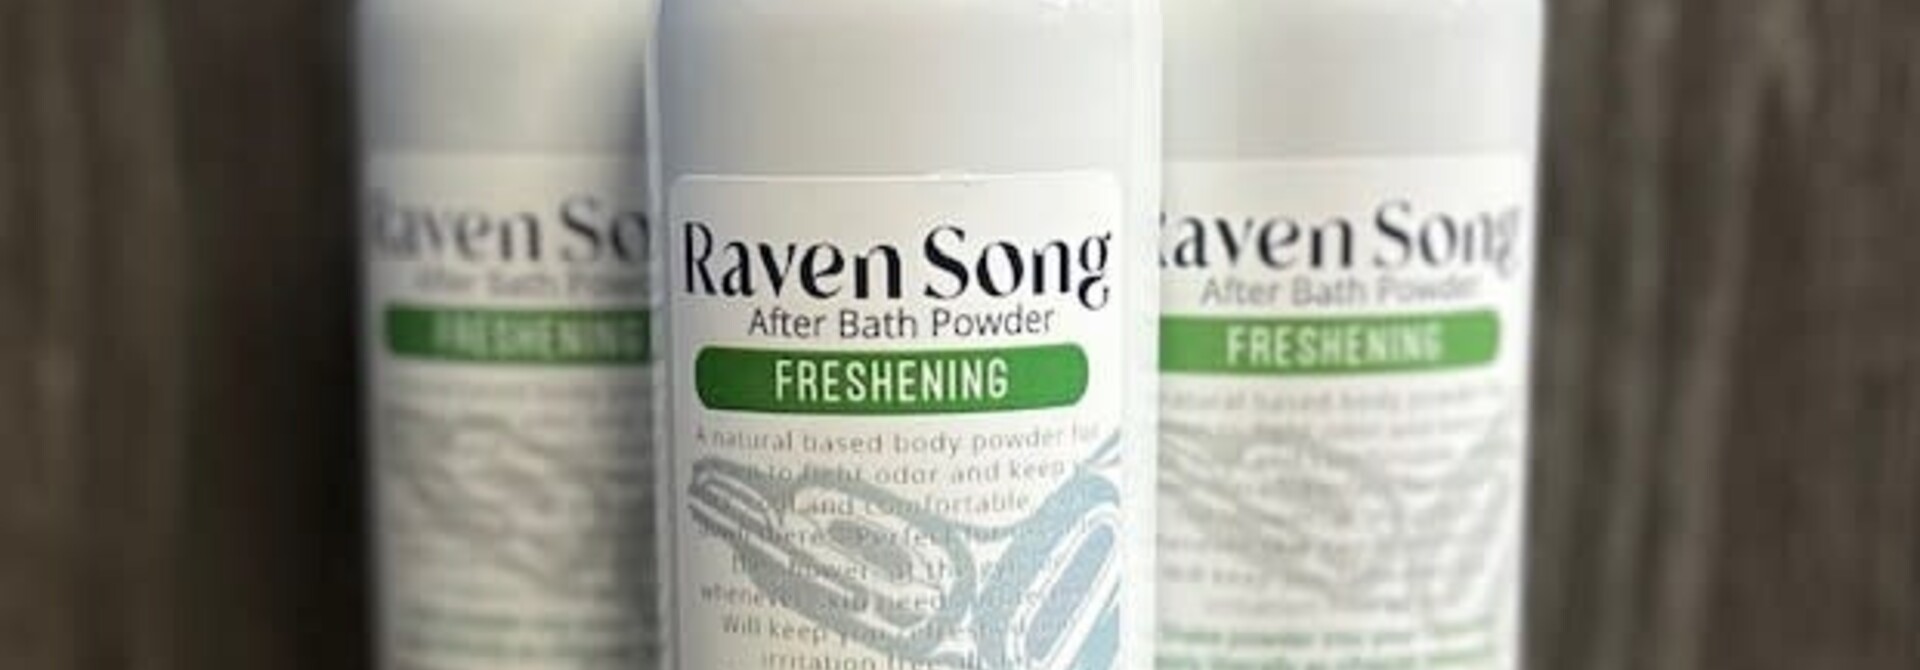 Freshening Body Powder by Raven Song